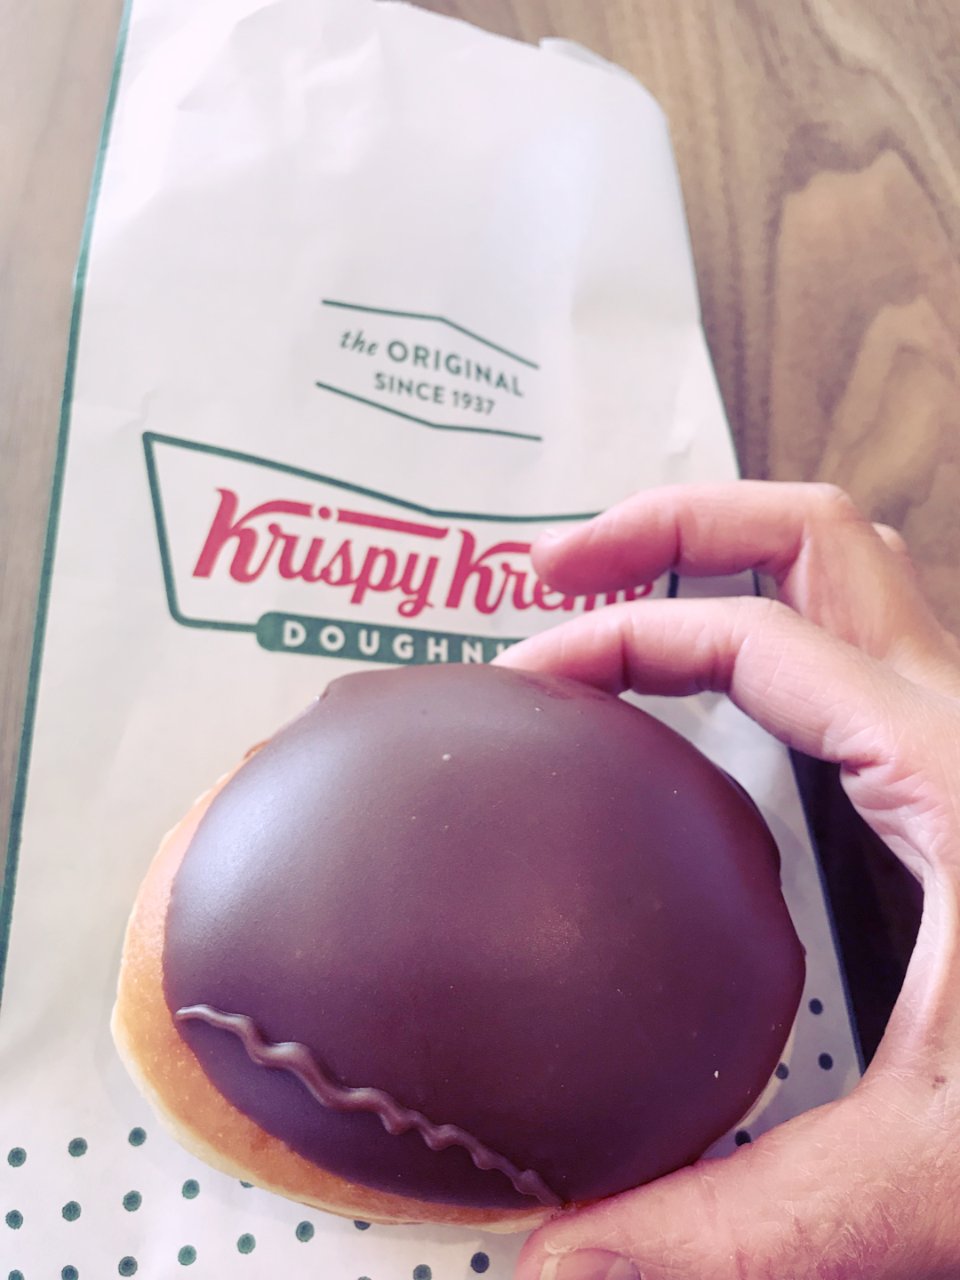 krispykreme甜甜圈🍩免費送一個...